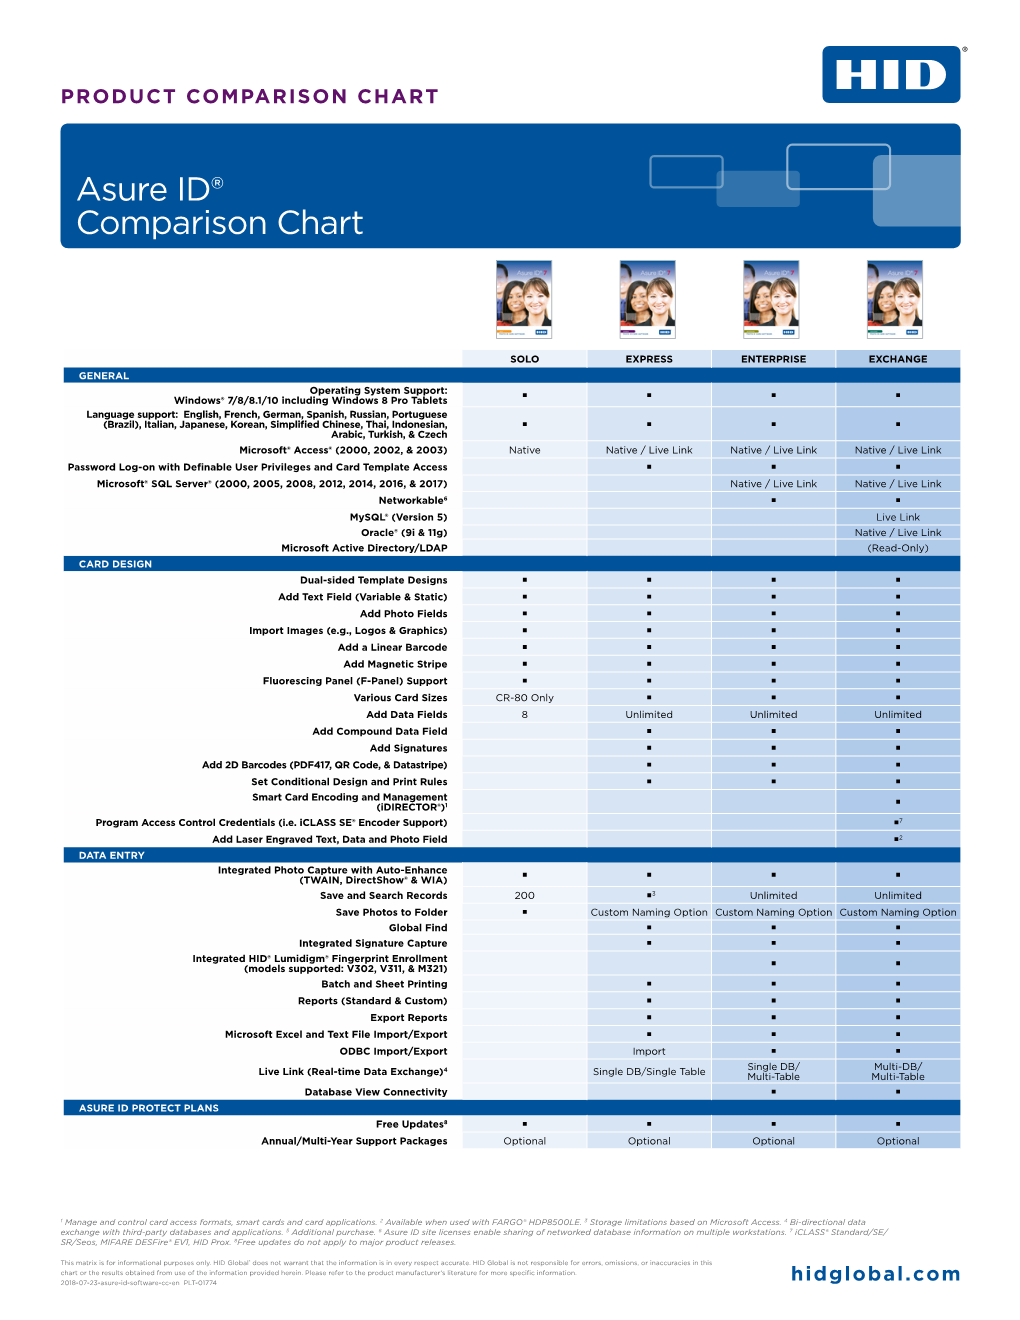 Asure ID® Comparison Chart